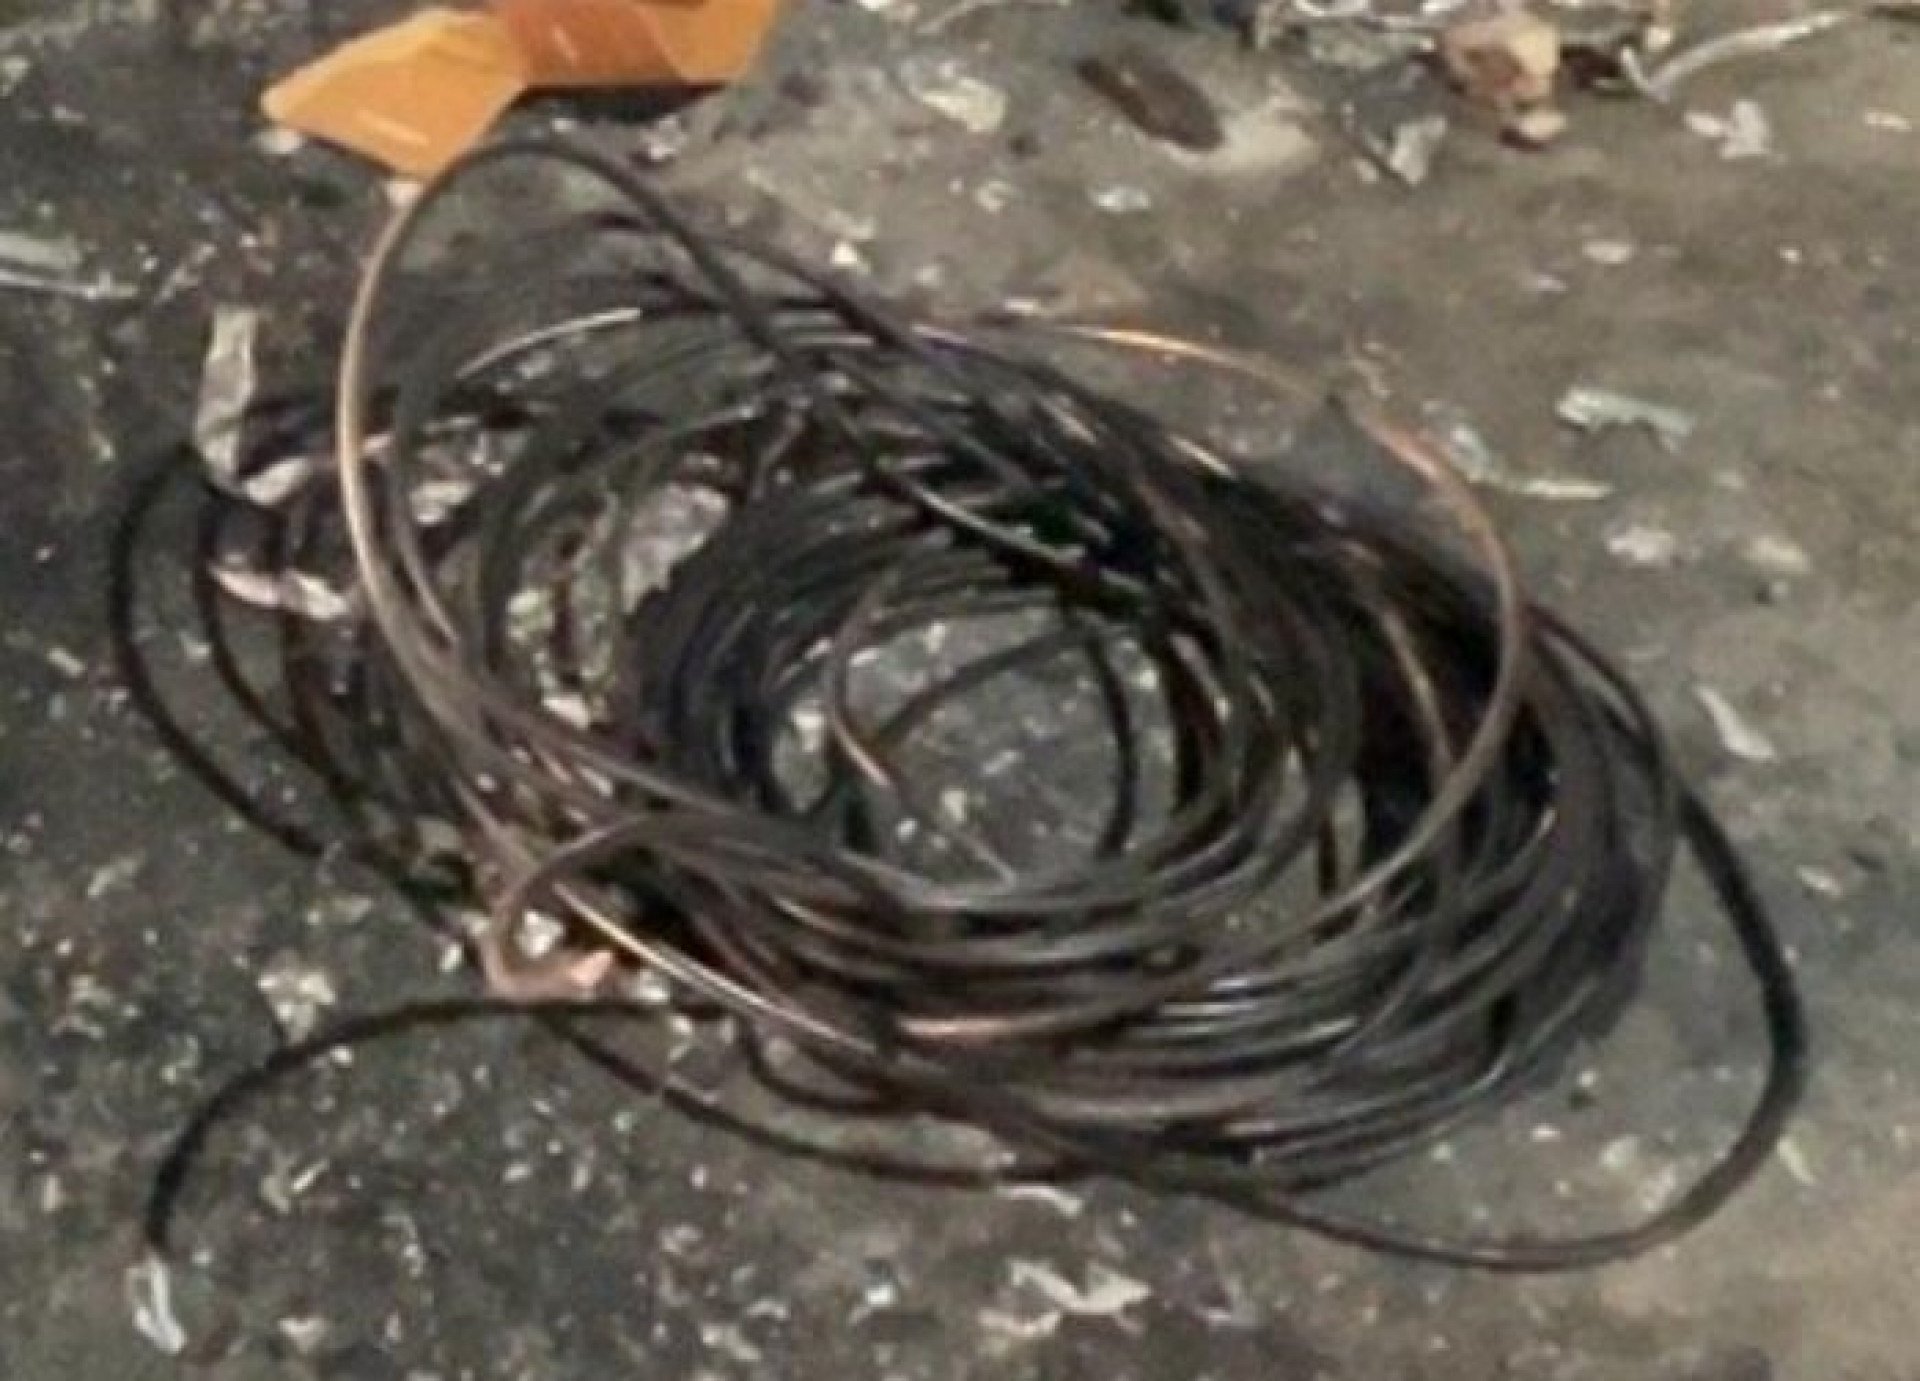 O homem foi preso pelos policiais militares quando queimava os cabos para extrair o cobre da fiação  - Divulgação / Pmerj